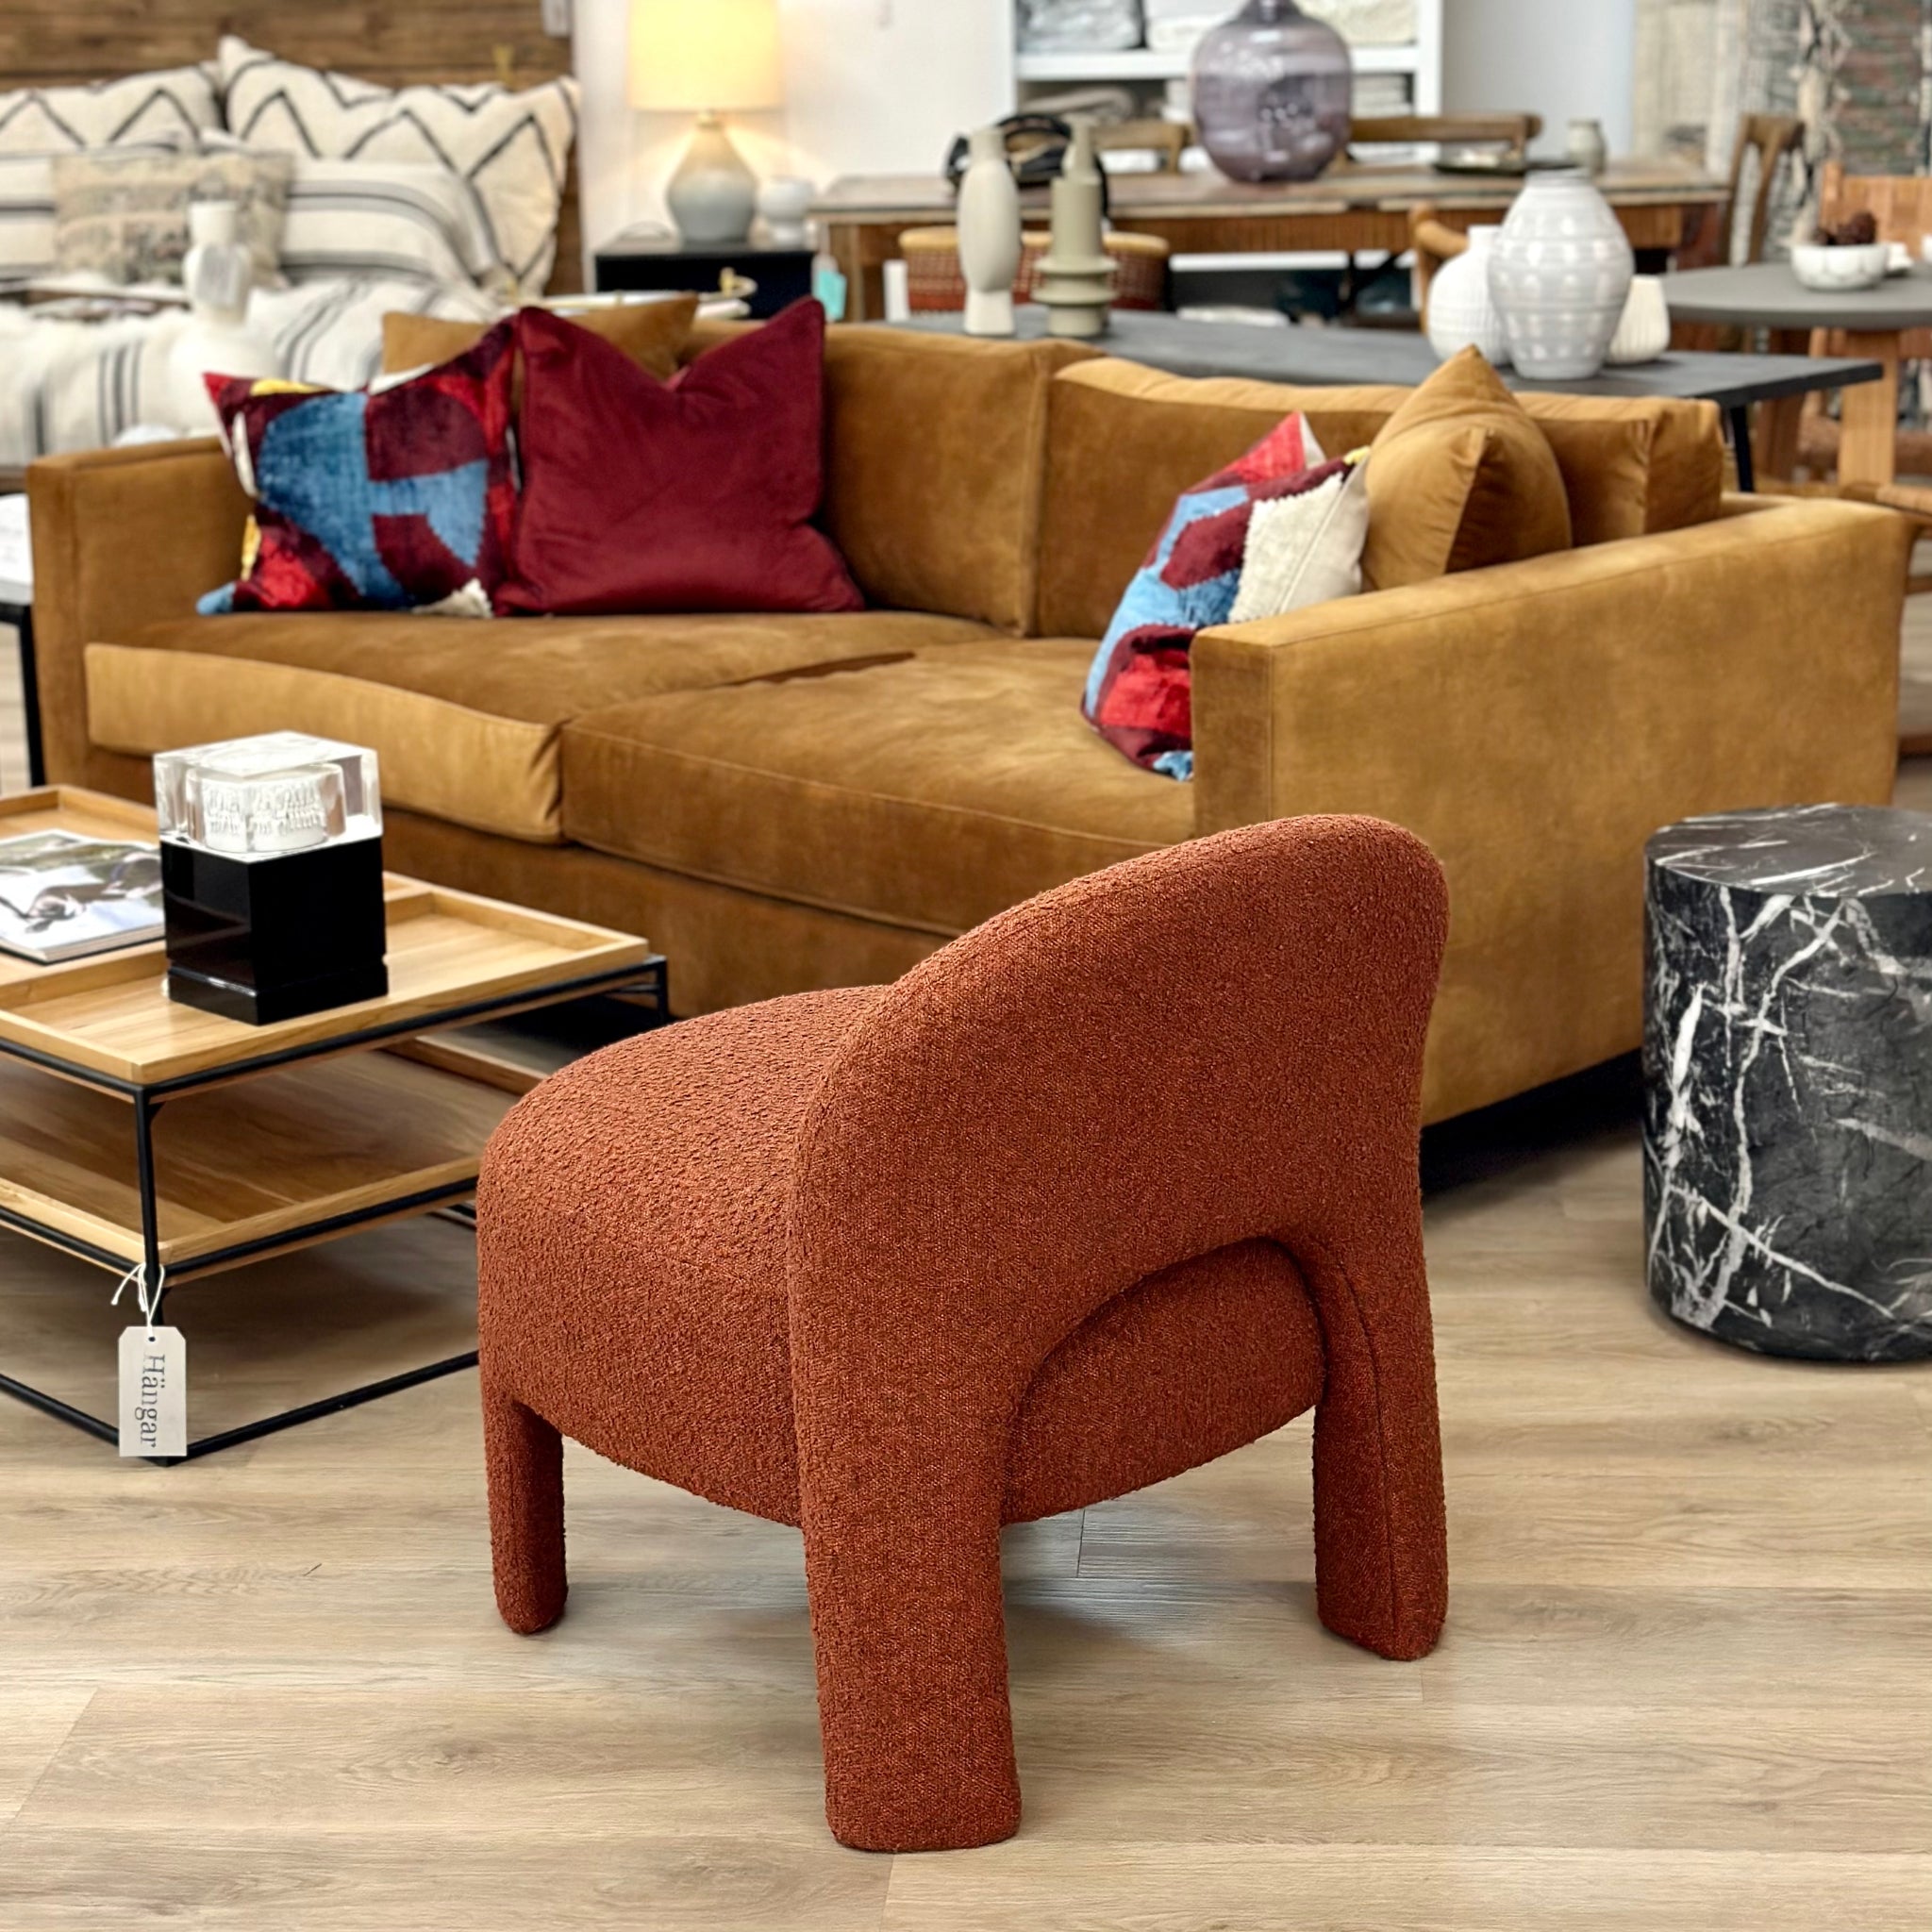 Sofa (65016), Accent Chair (24102)